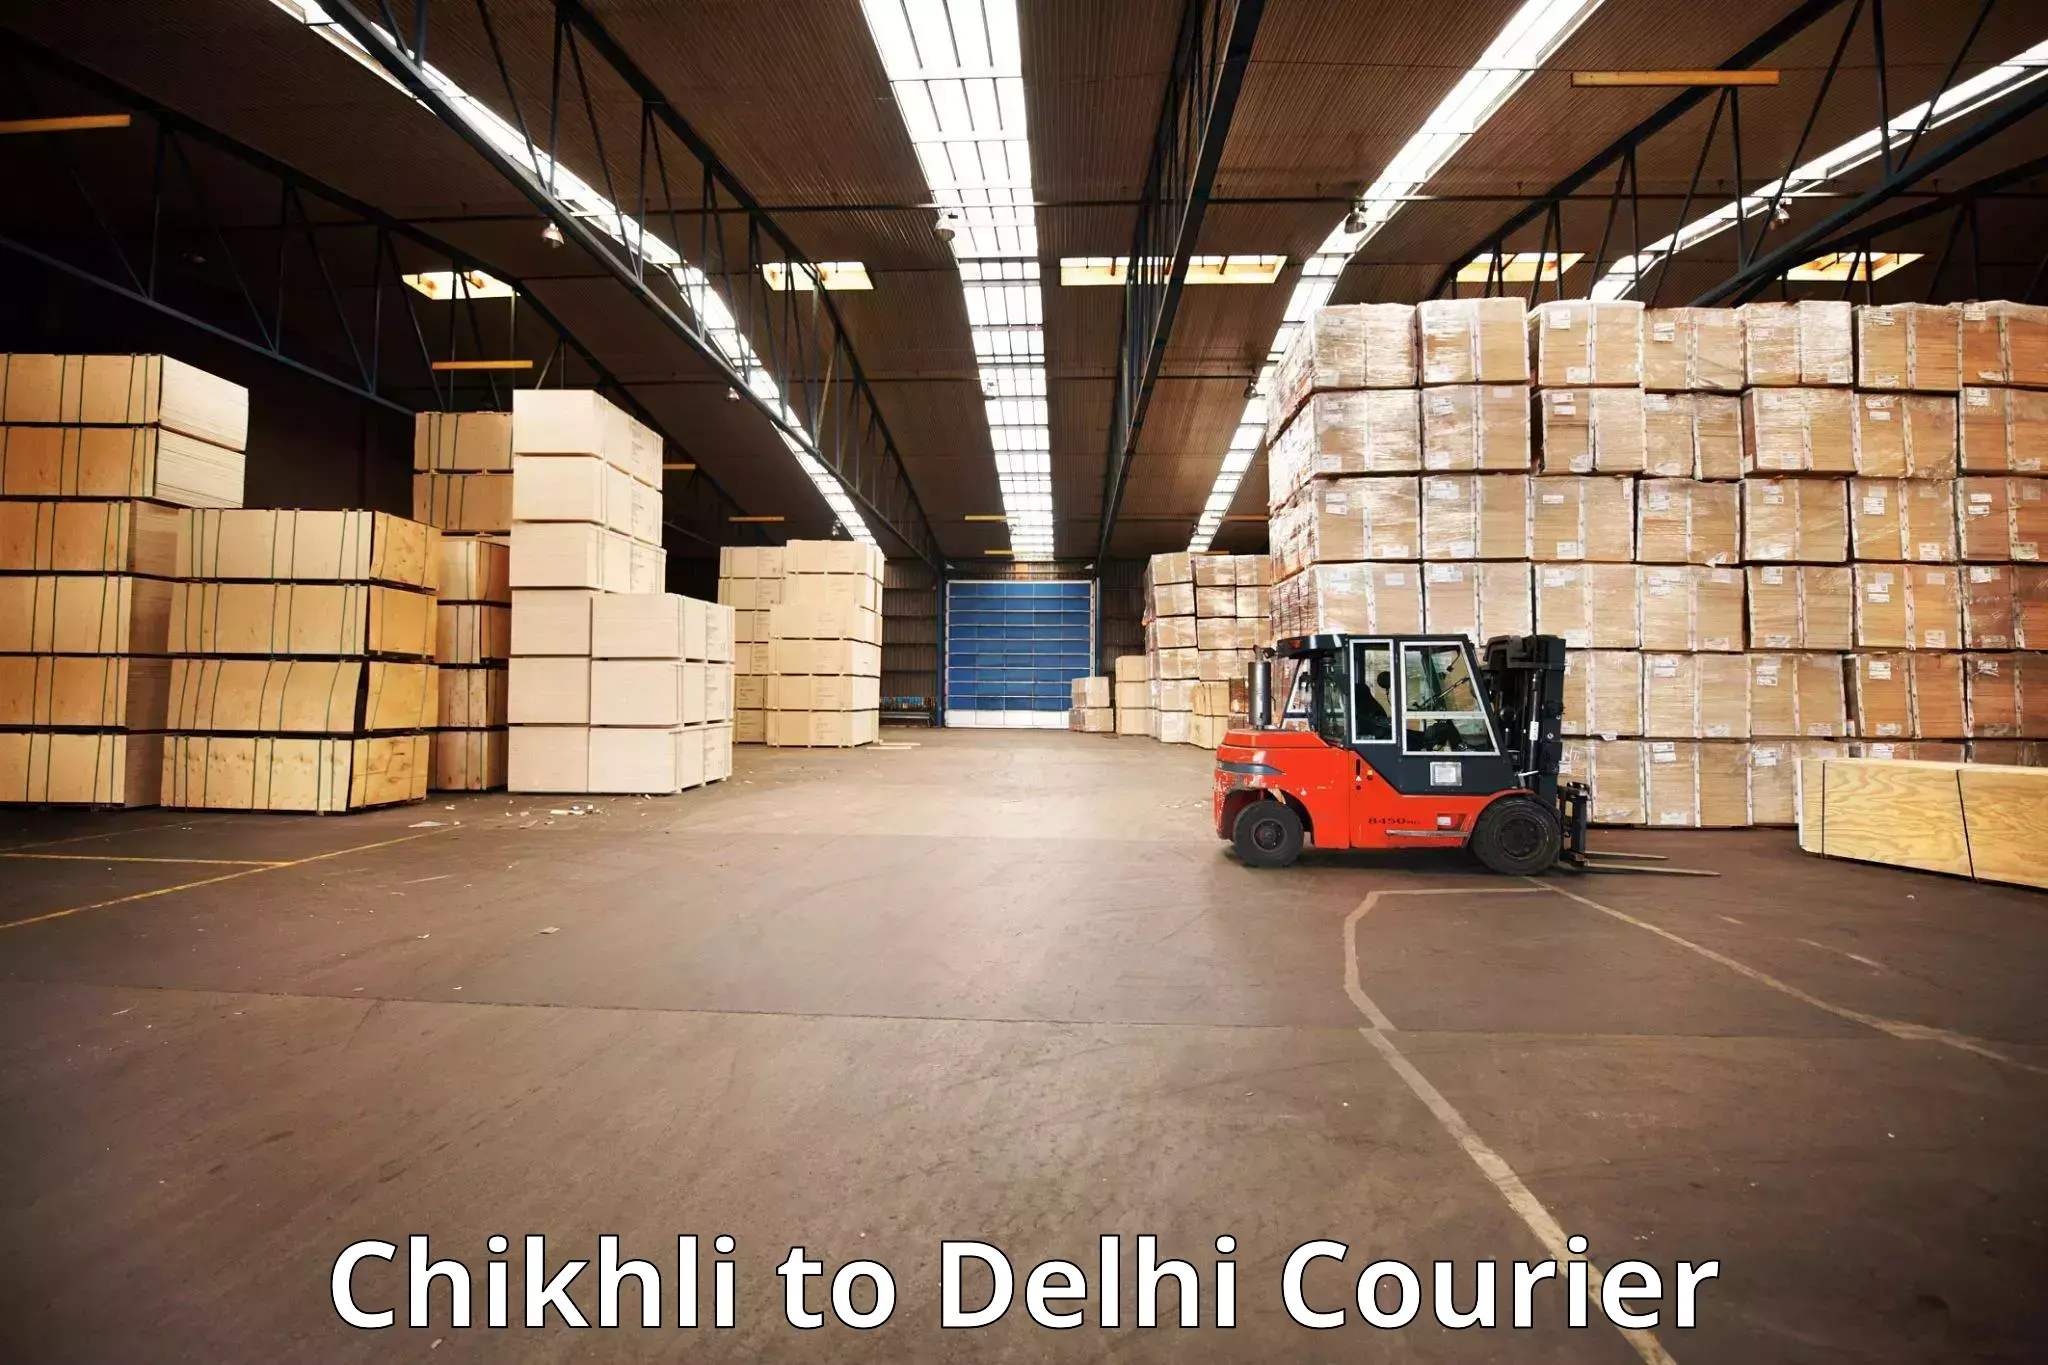 Luggage transport consultancy Chikhli to Delhi